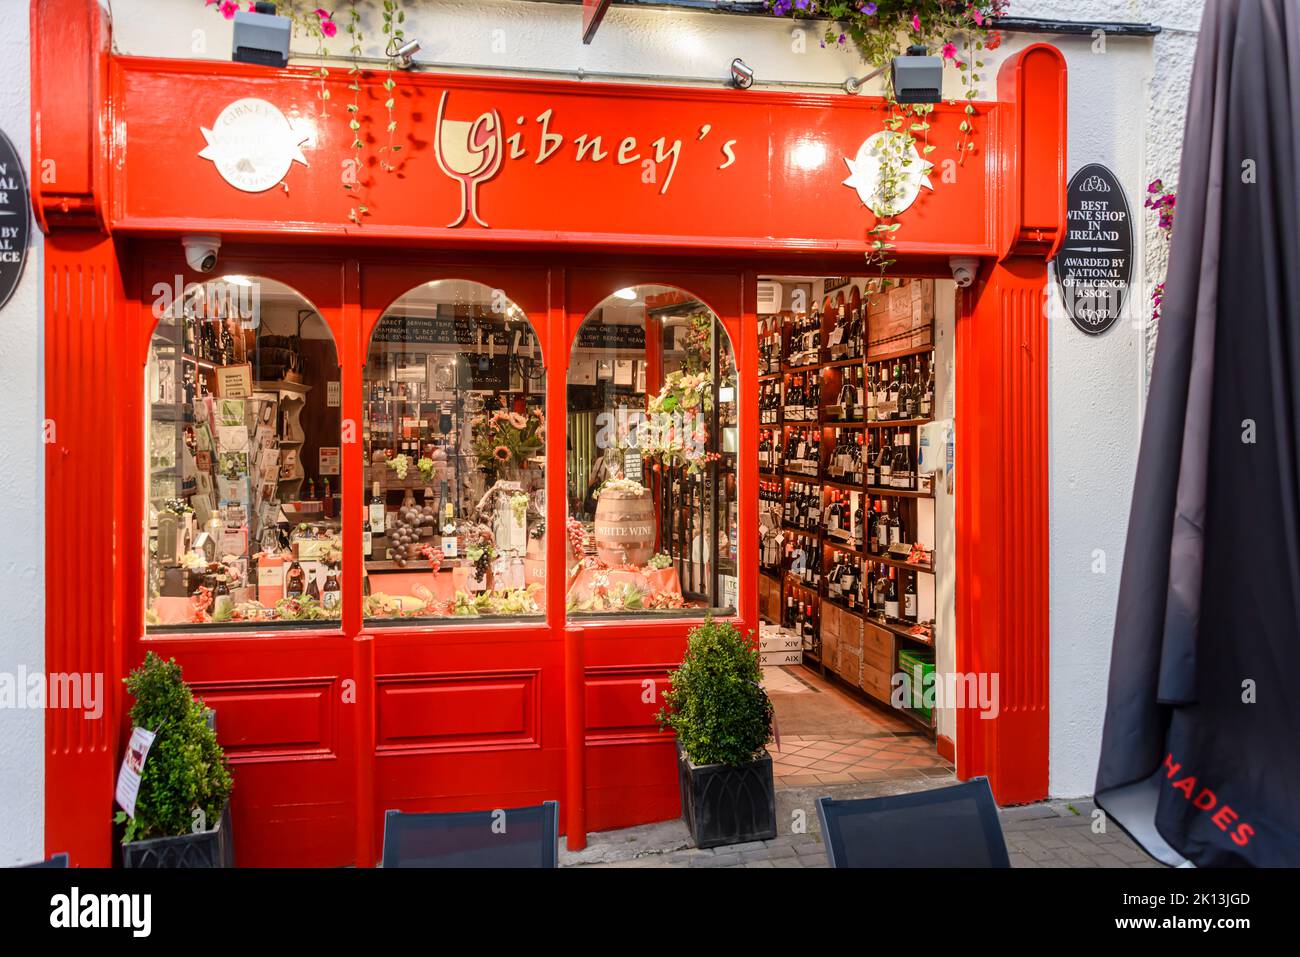 Gibney's Wine Shop, Malahide, Irlanda, premiato con il "miglior negozio di vini in Irlanda" Foto Stock